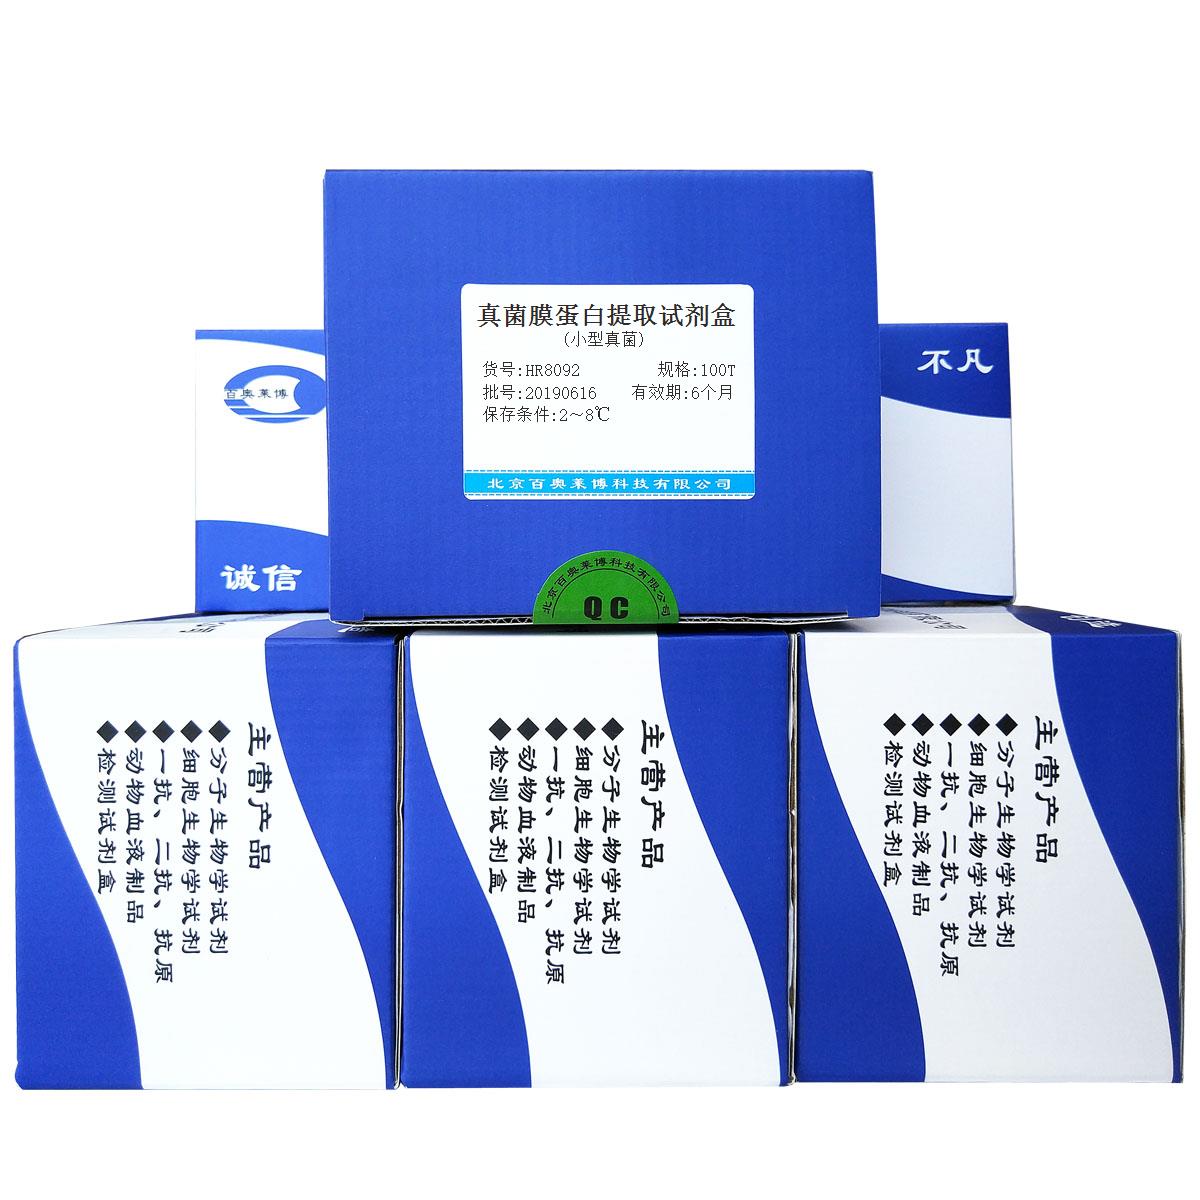 真菌膜蛋白提取试剂盒(小型真菌)北京品牌